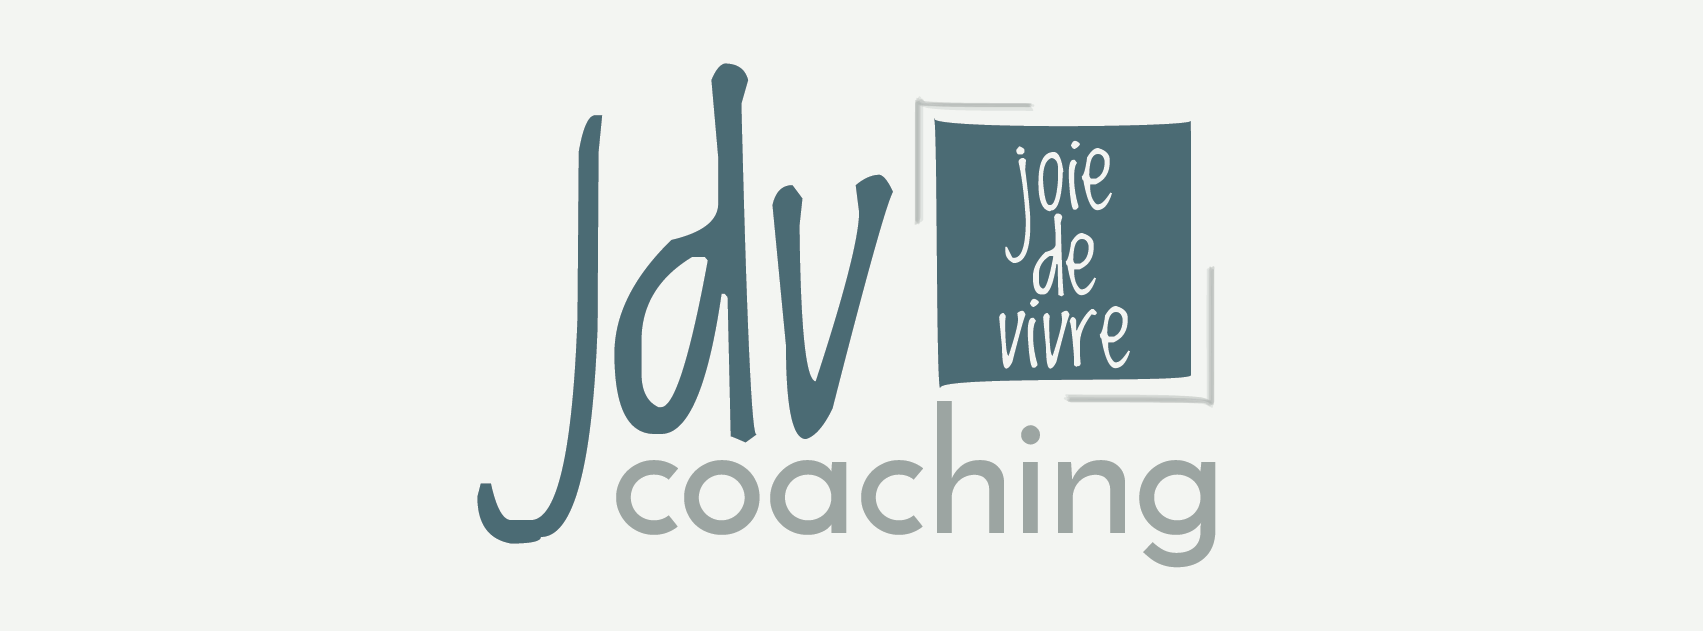 Life coaching - JDV Coaching